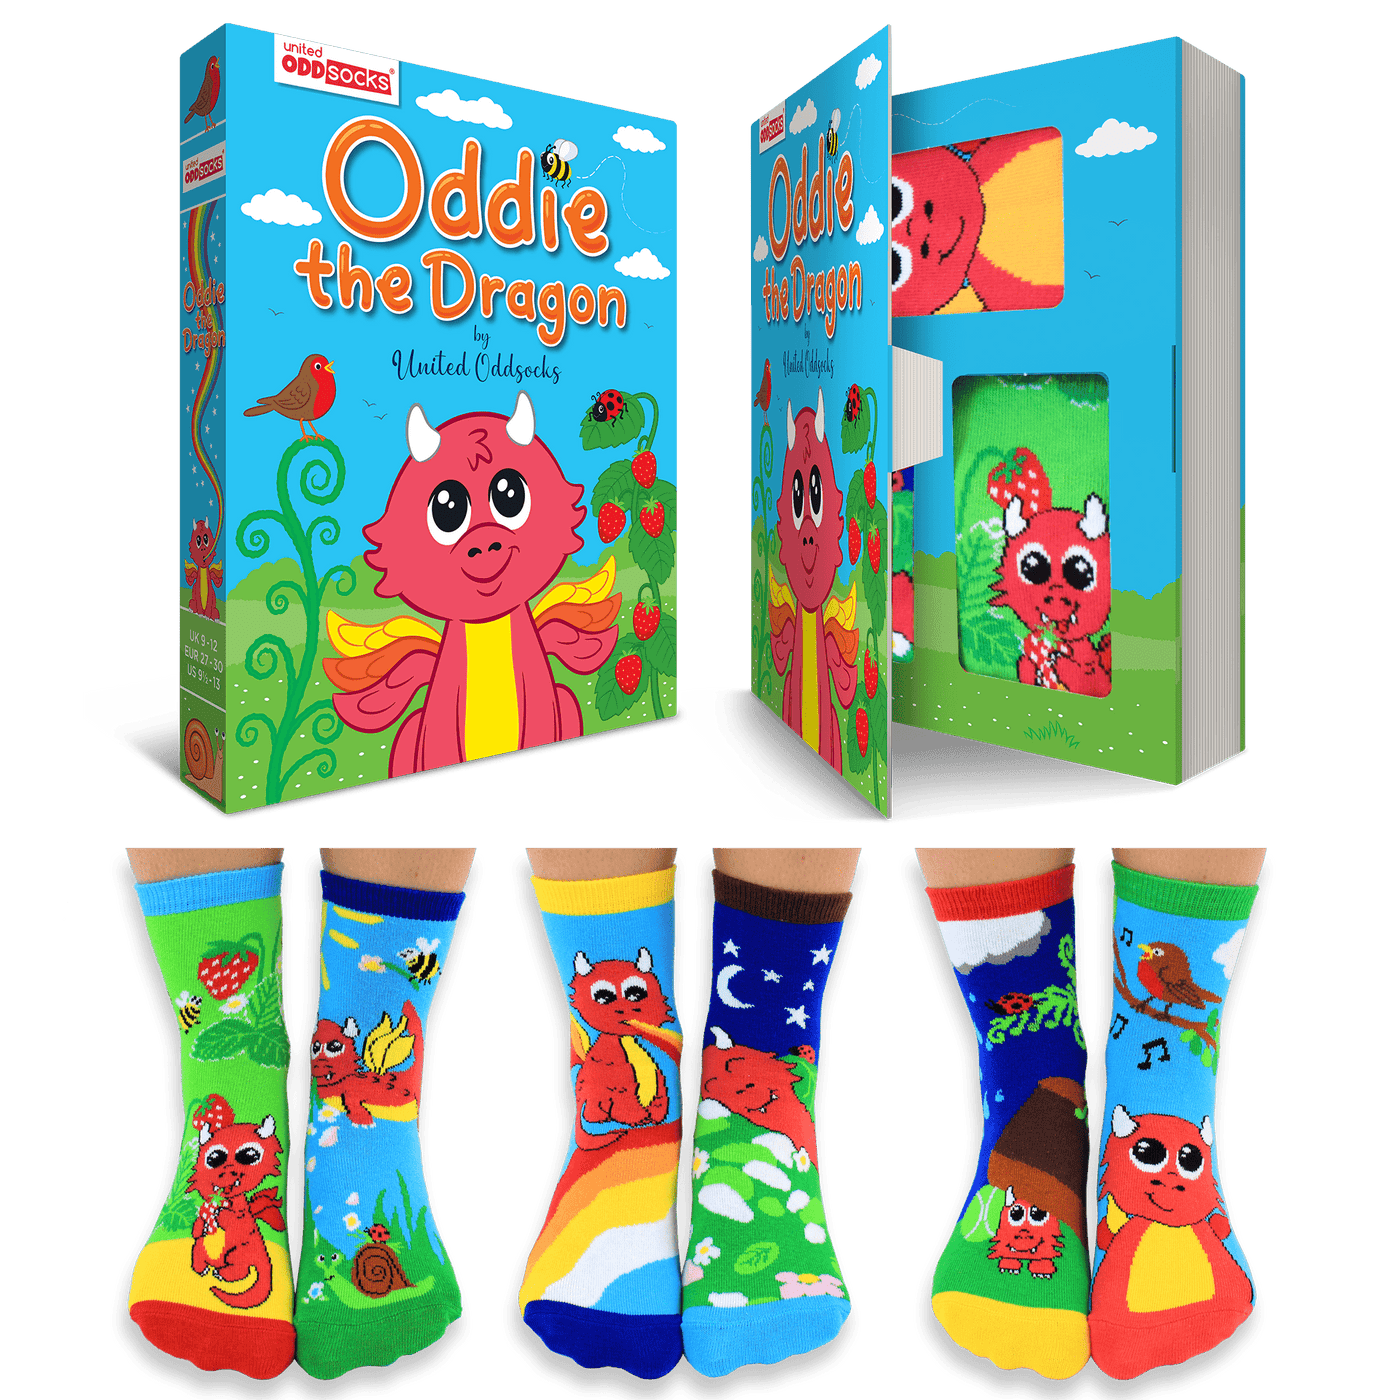 United Odd Socks Socks Oddie the Dragon Children's Socks - Size 9-12